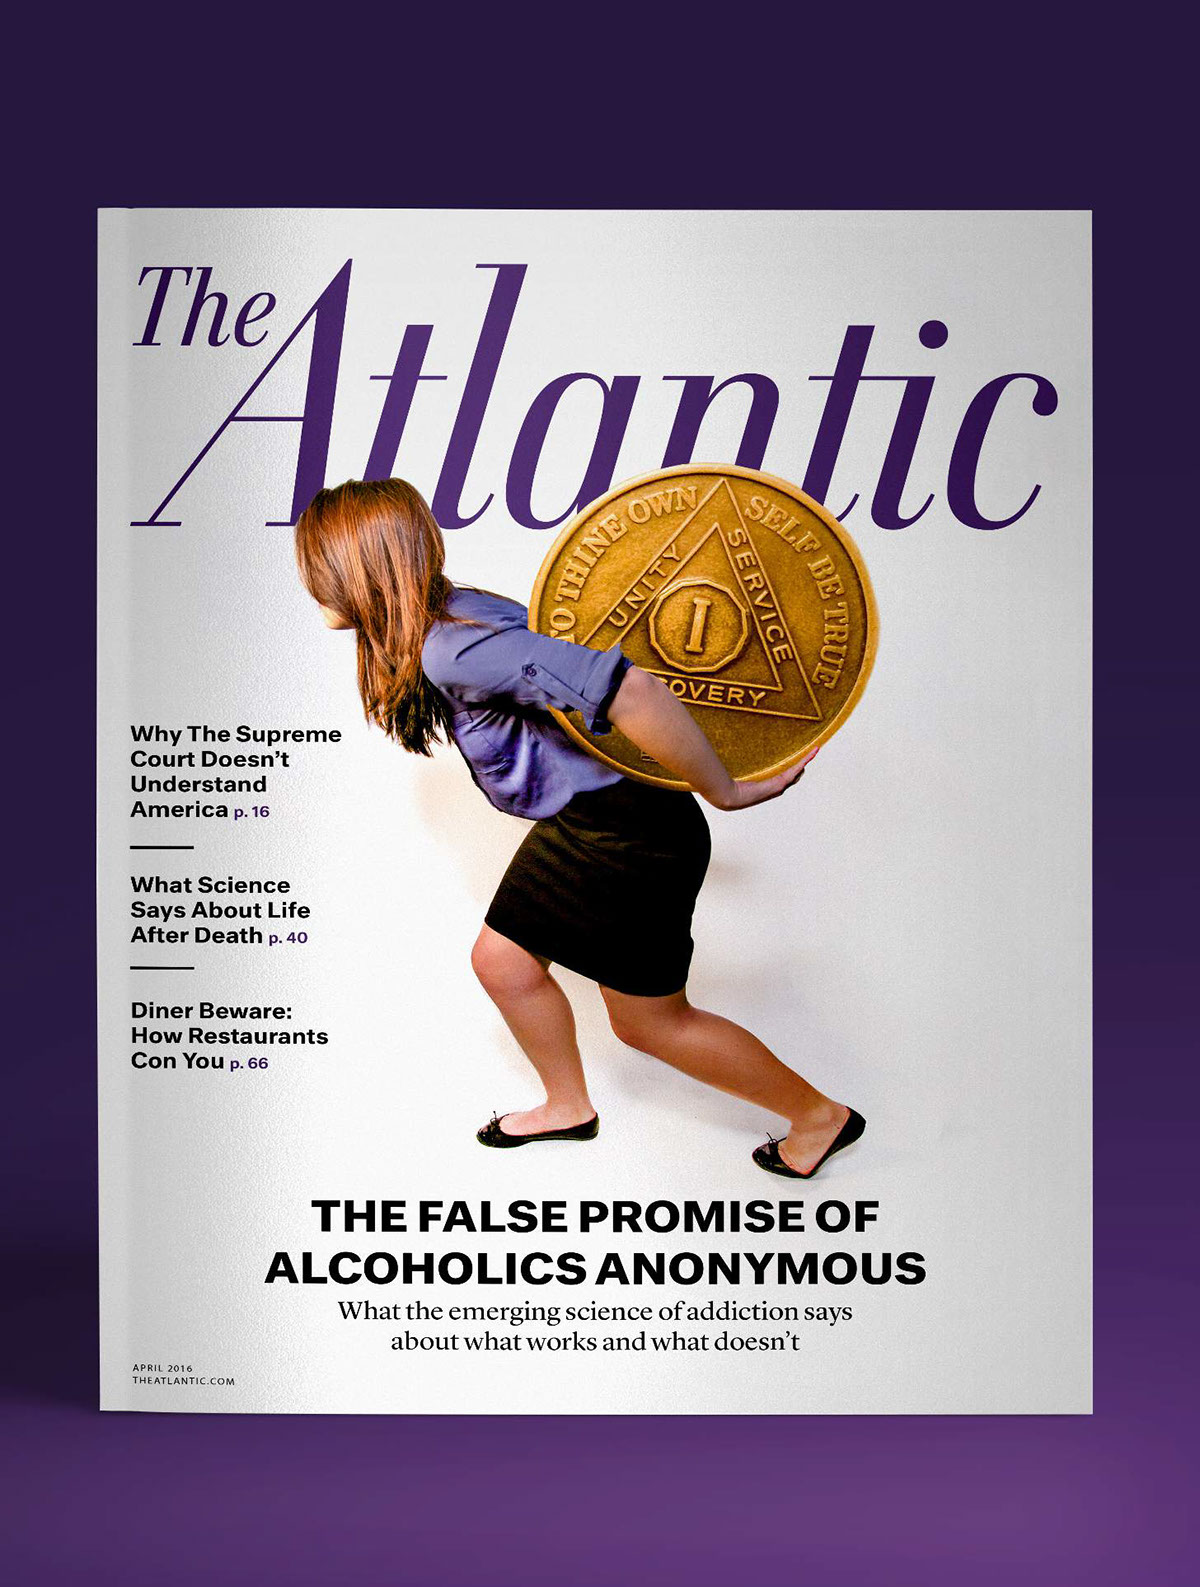 Atlas Shrugged The Atlantic magazine photoshoot